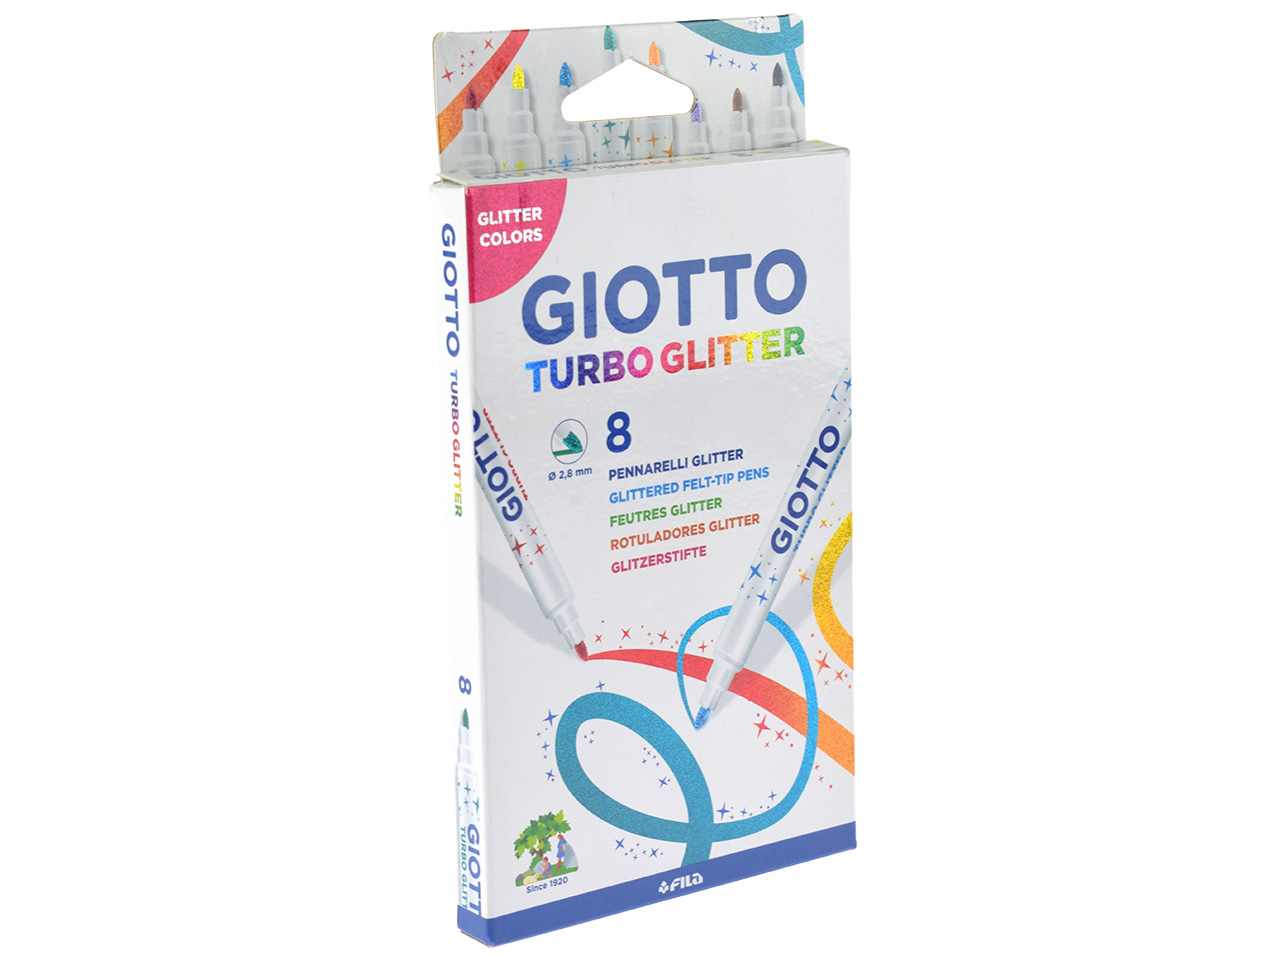 TOP 8 Giotto Turbo Glitter Glitzerstifte Fasermaler Filzstifte Glitzer Filzer 